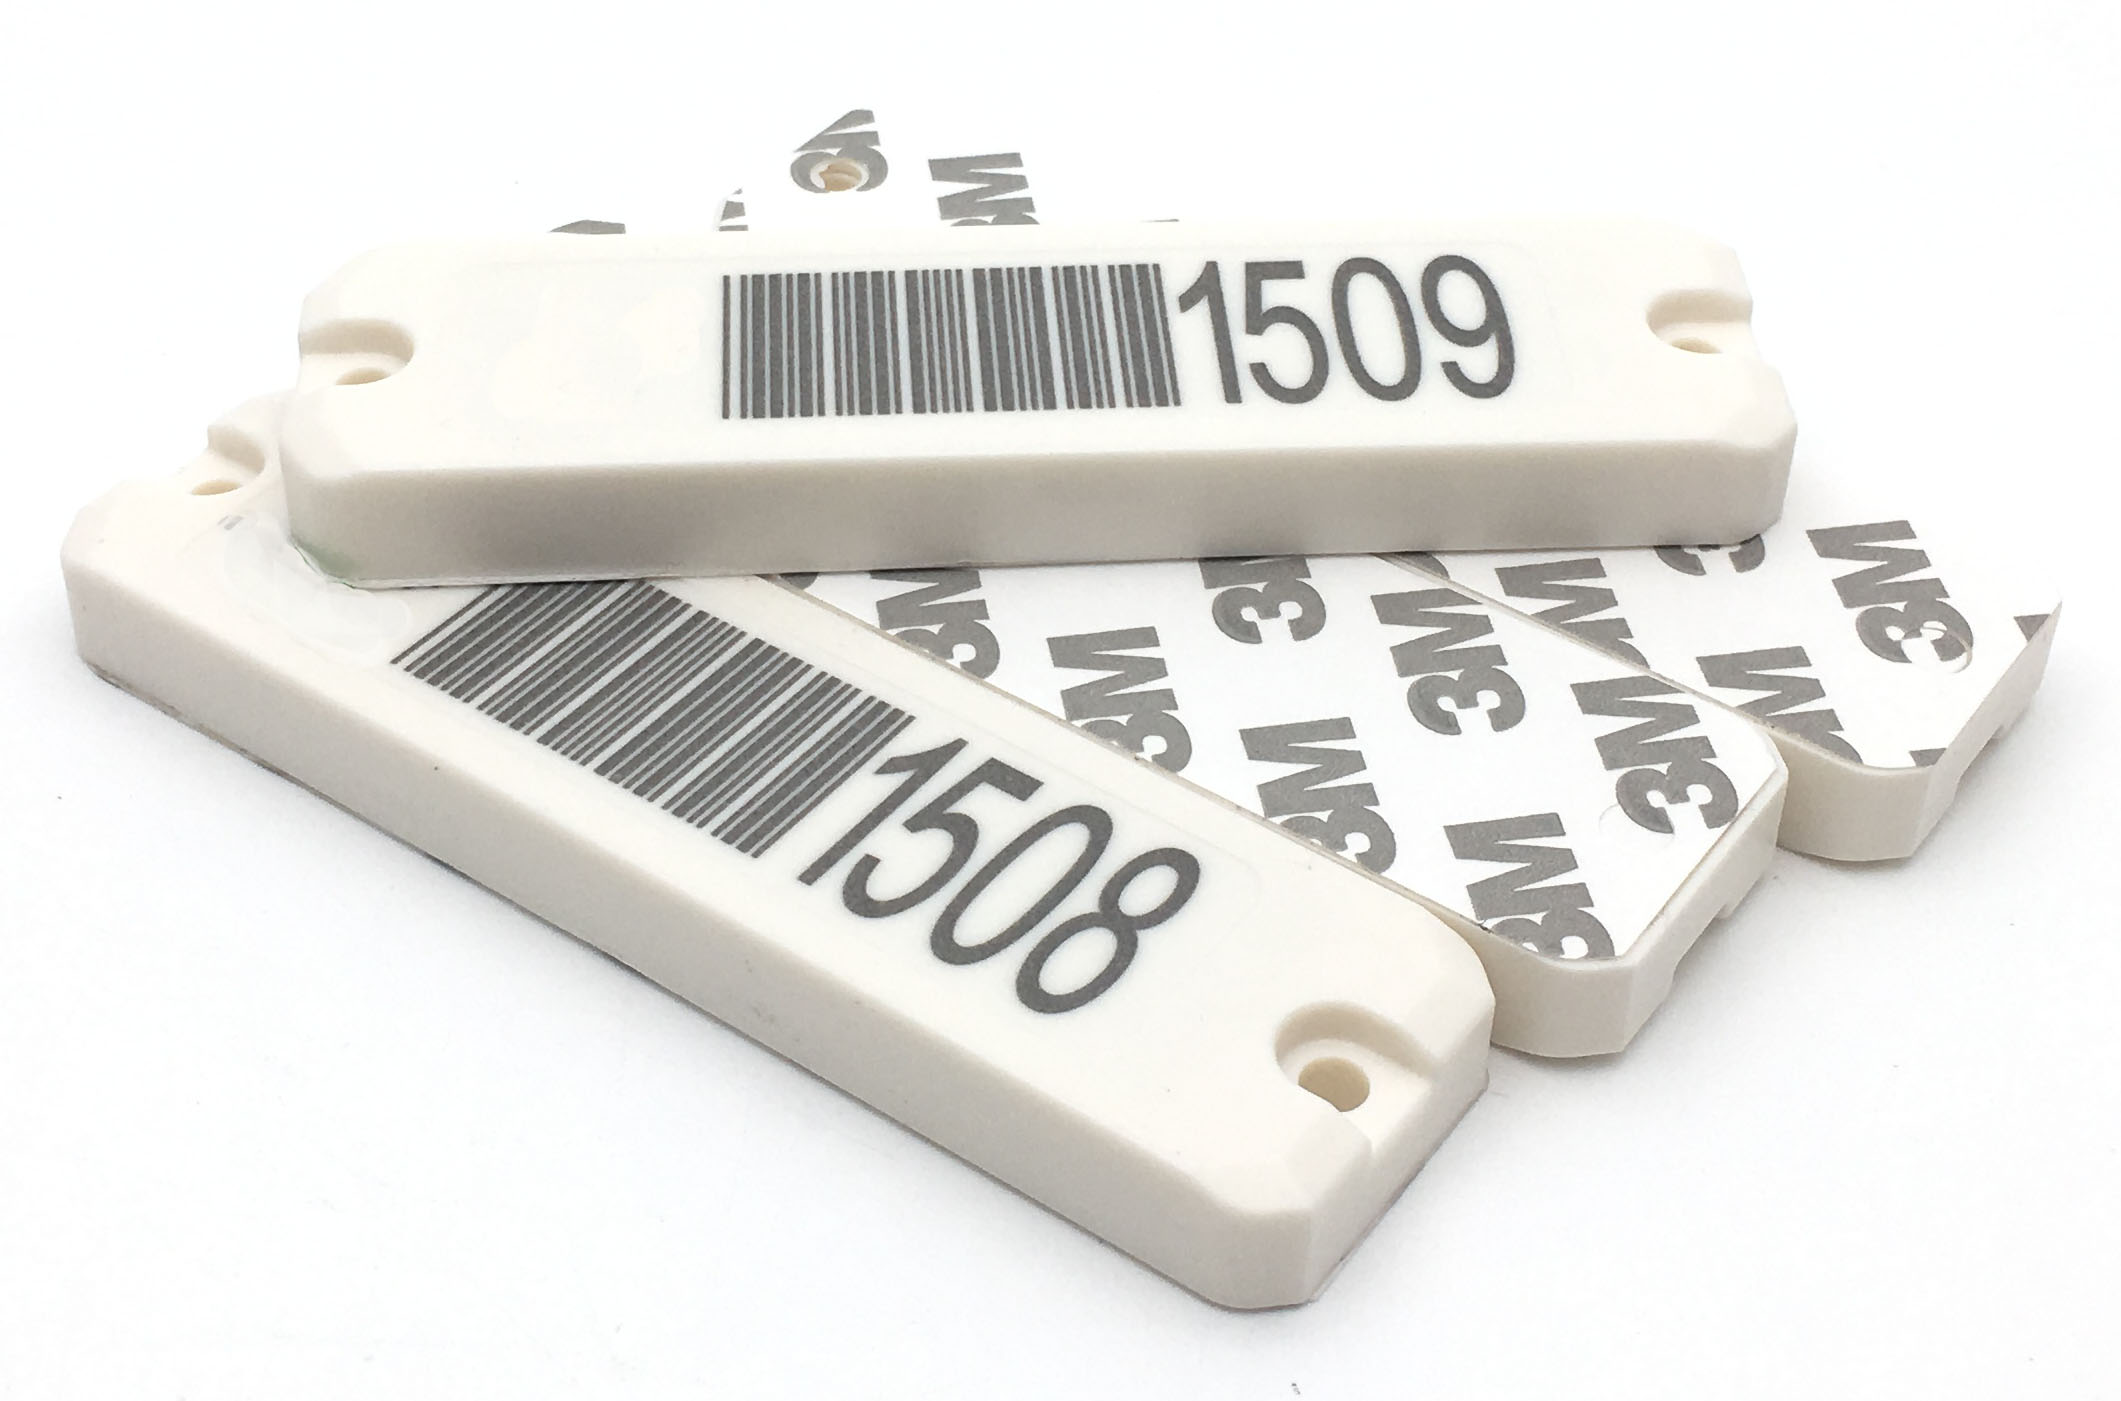 Anti-metal RFID tag, rfid tag, uhf tag